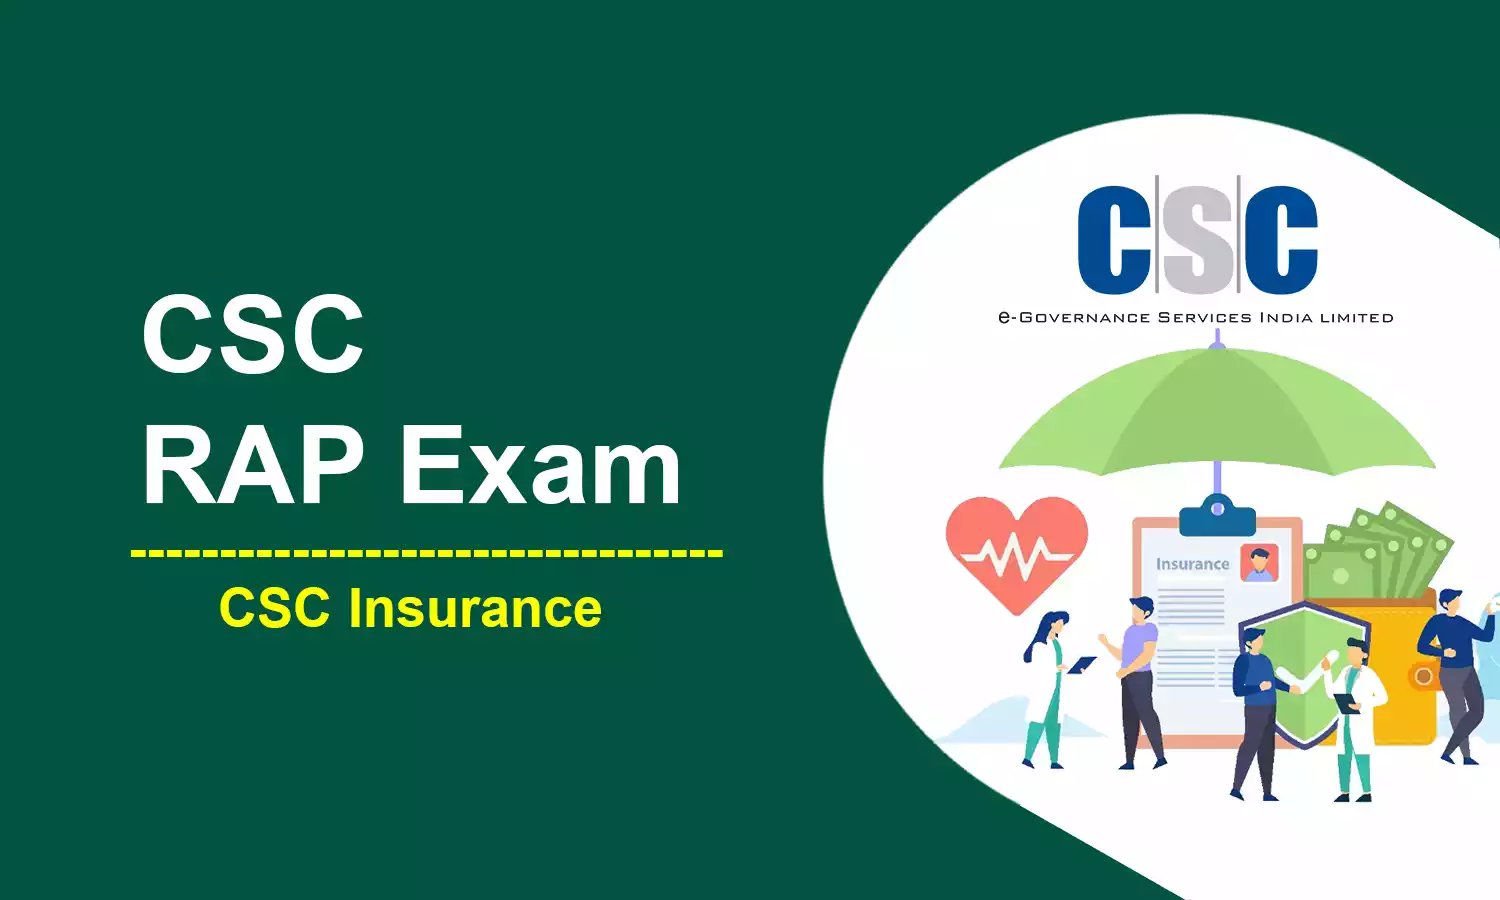 CSC RAP Exam Registration